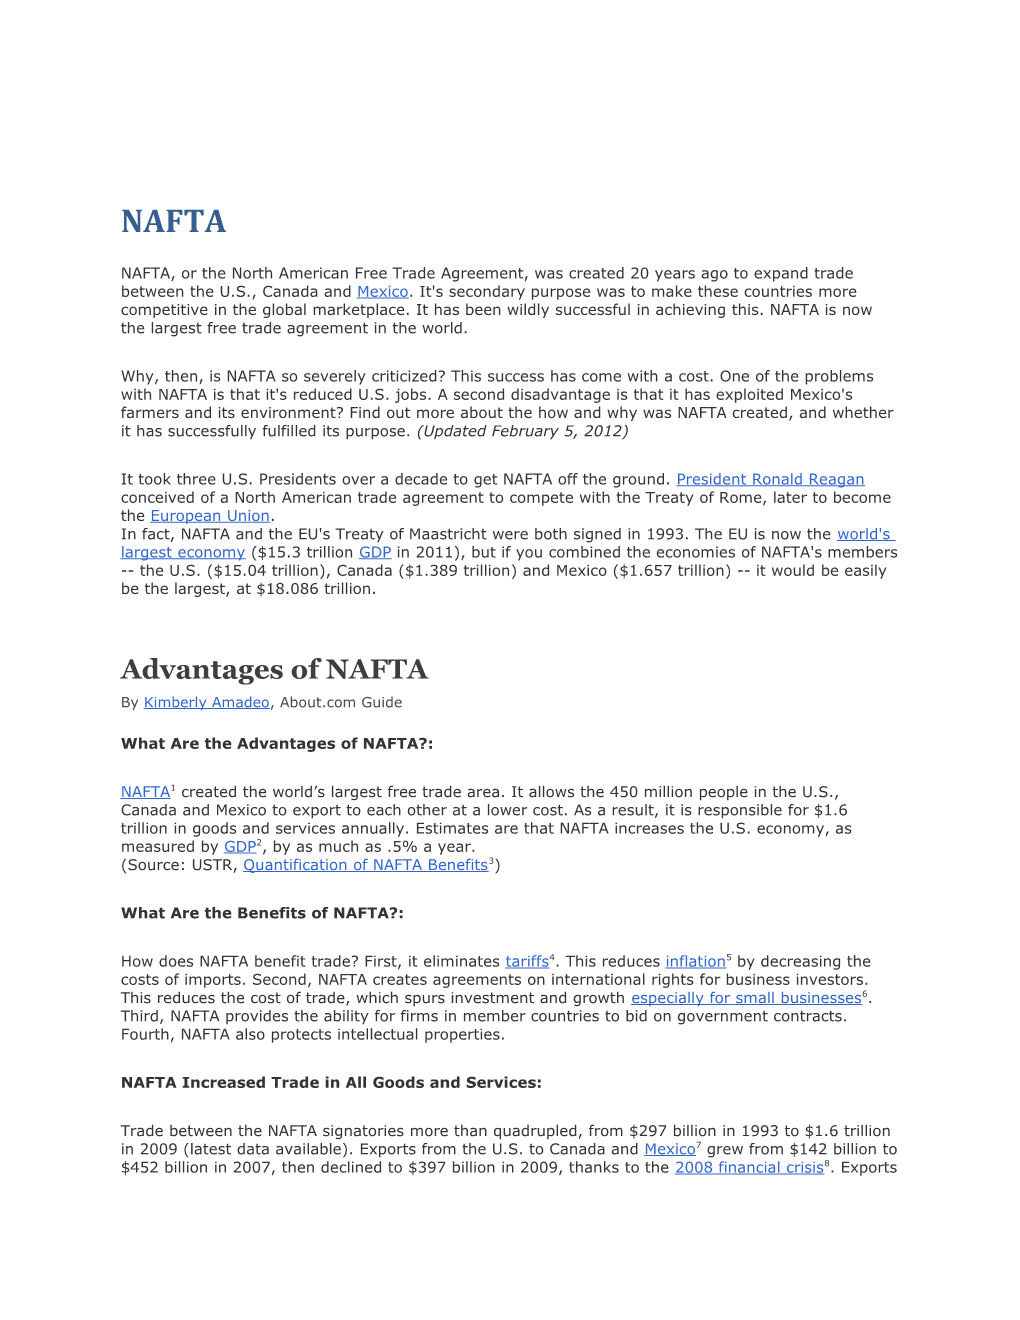 Advantages of NAFTA